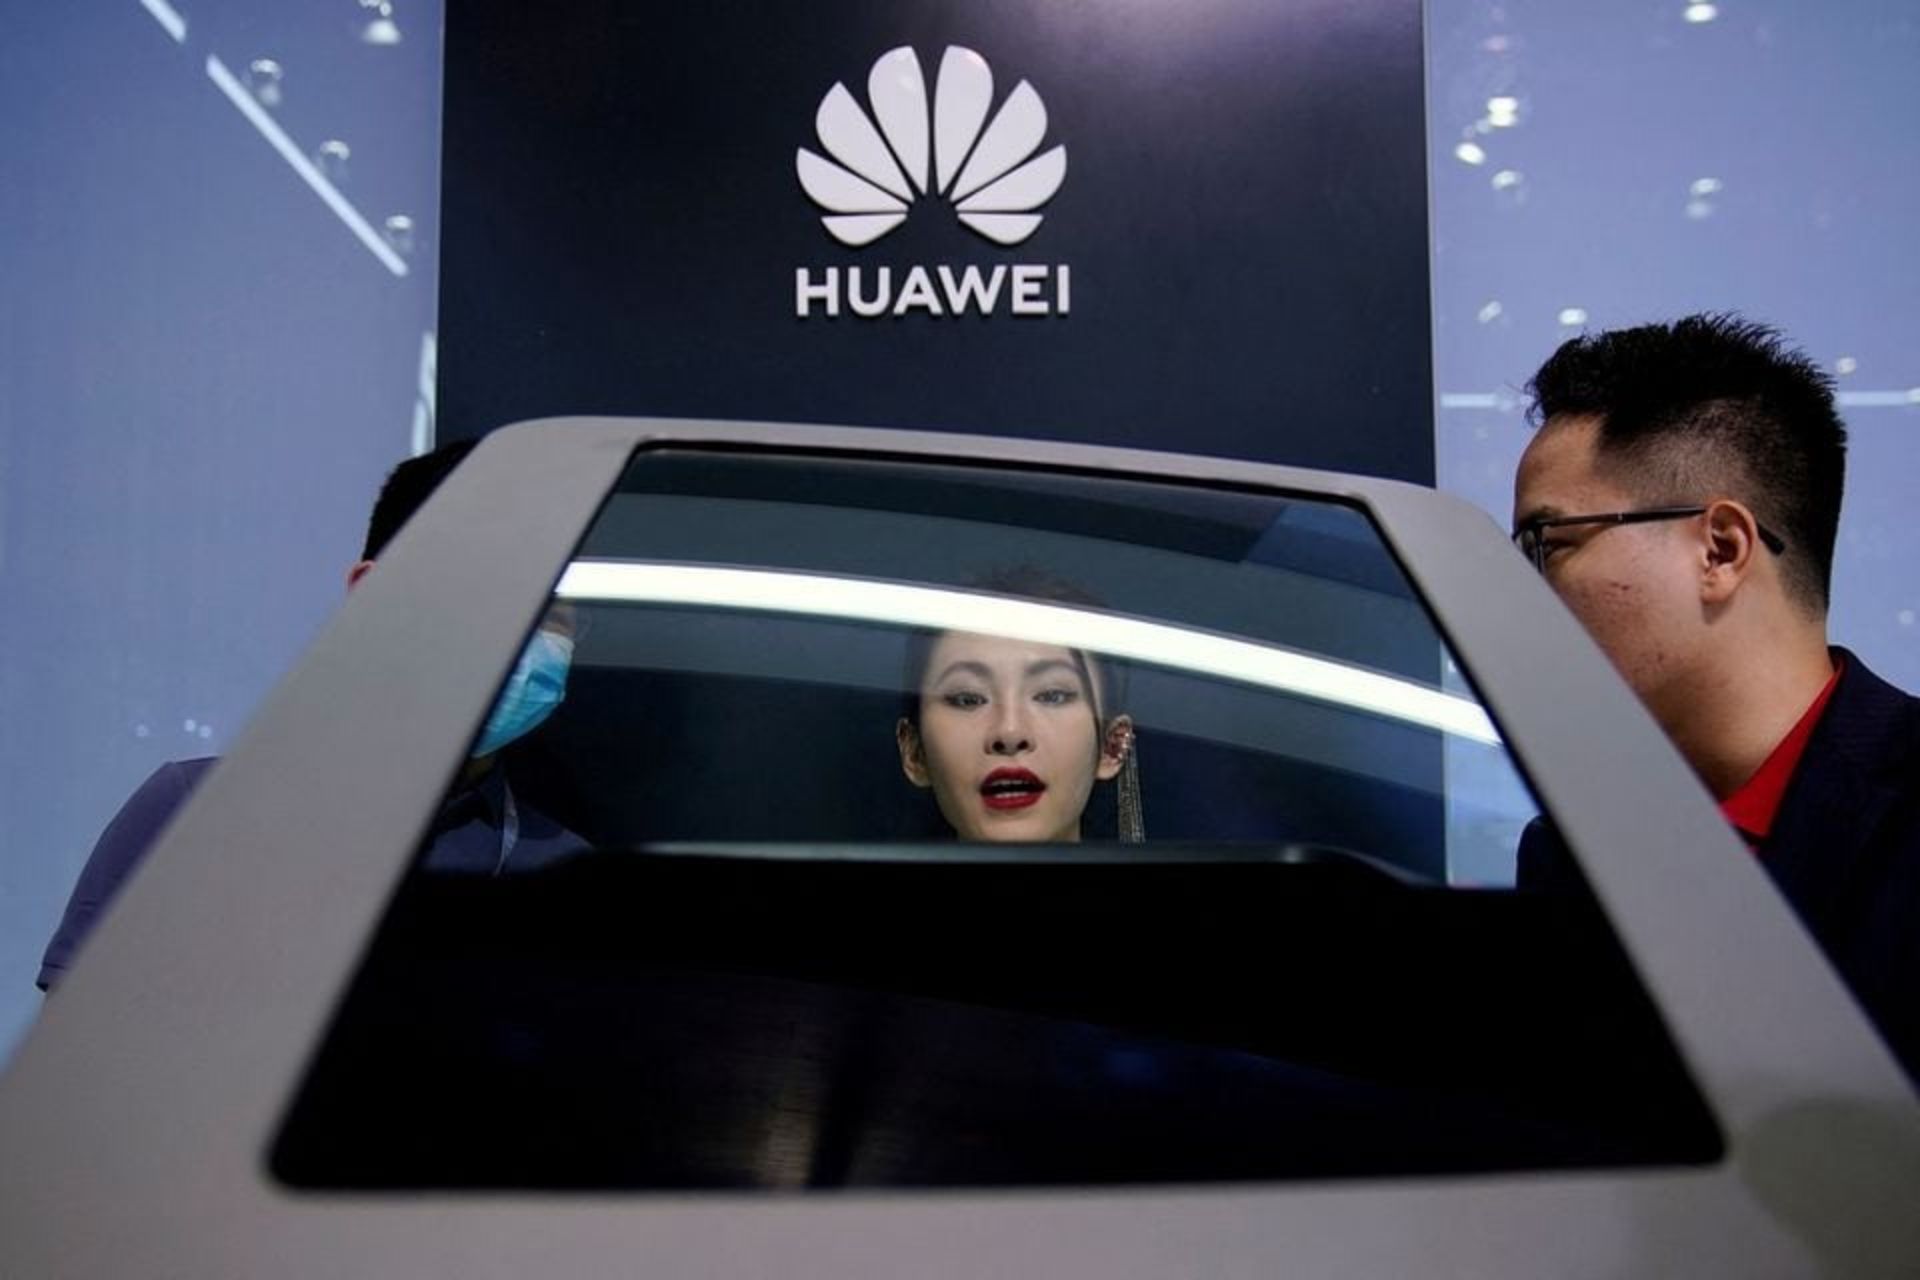 مرد و زن چینی در مقابل لوگوی هواوی در حال نگاه کردن به خودروی هوشمند